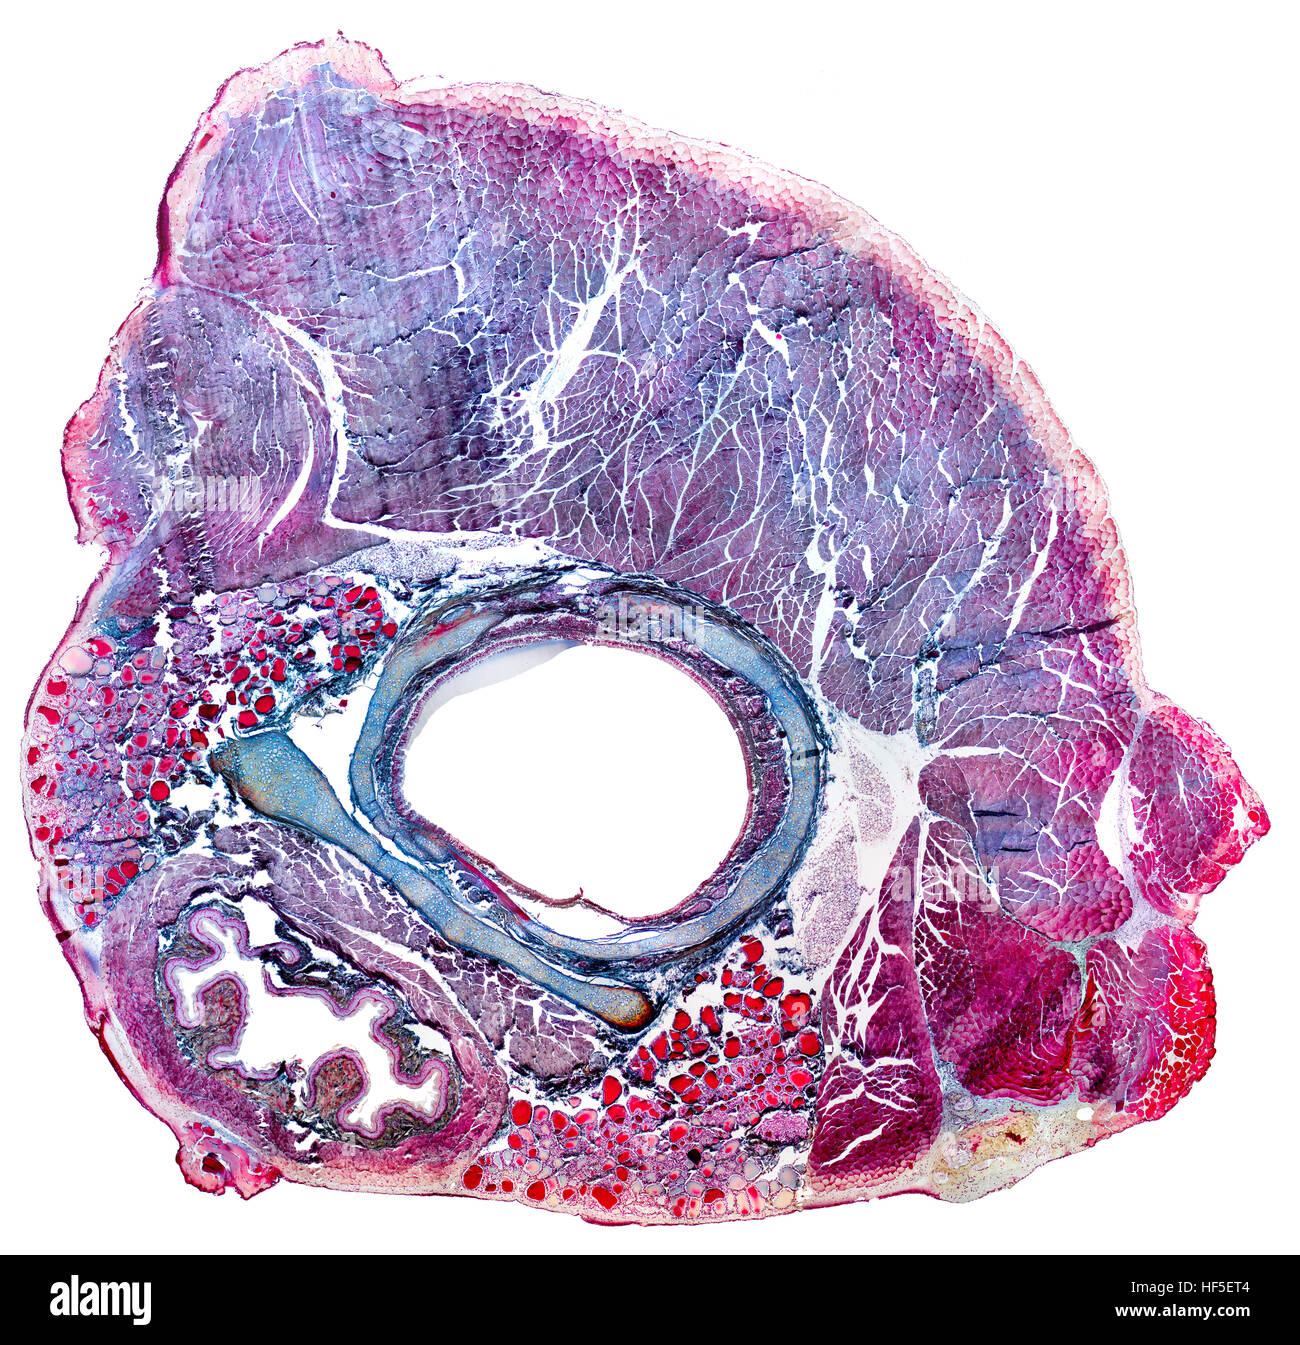 Full-Frame-mikroskopische gedreht, zeigt der Hals-Organe von einer Ratte Stockfoto